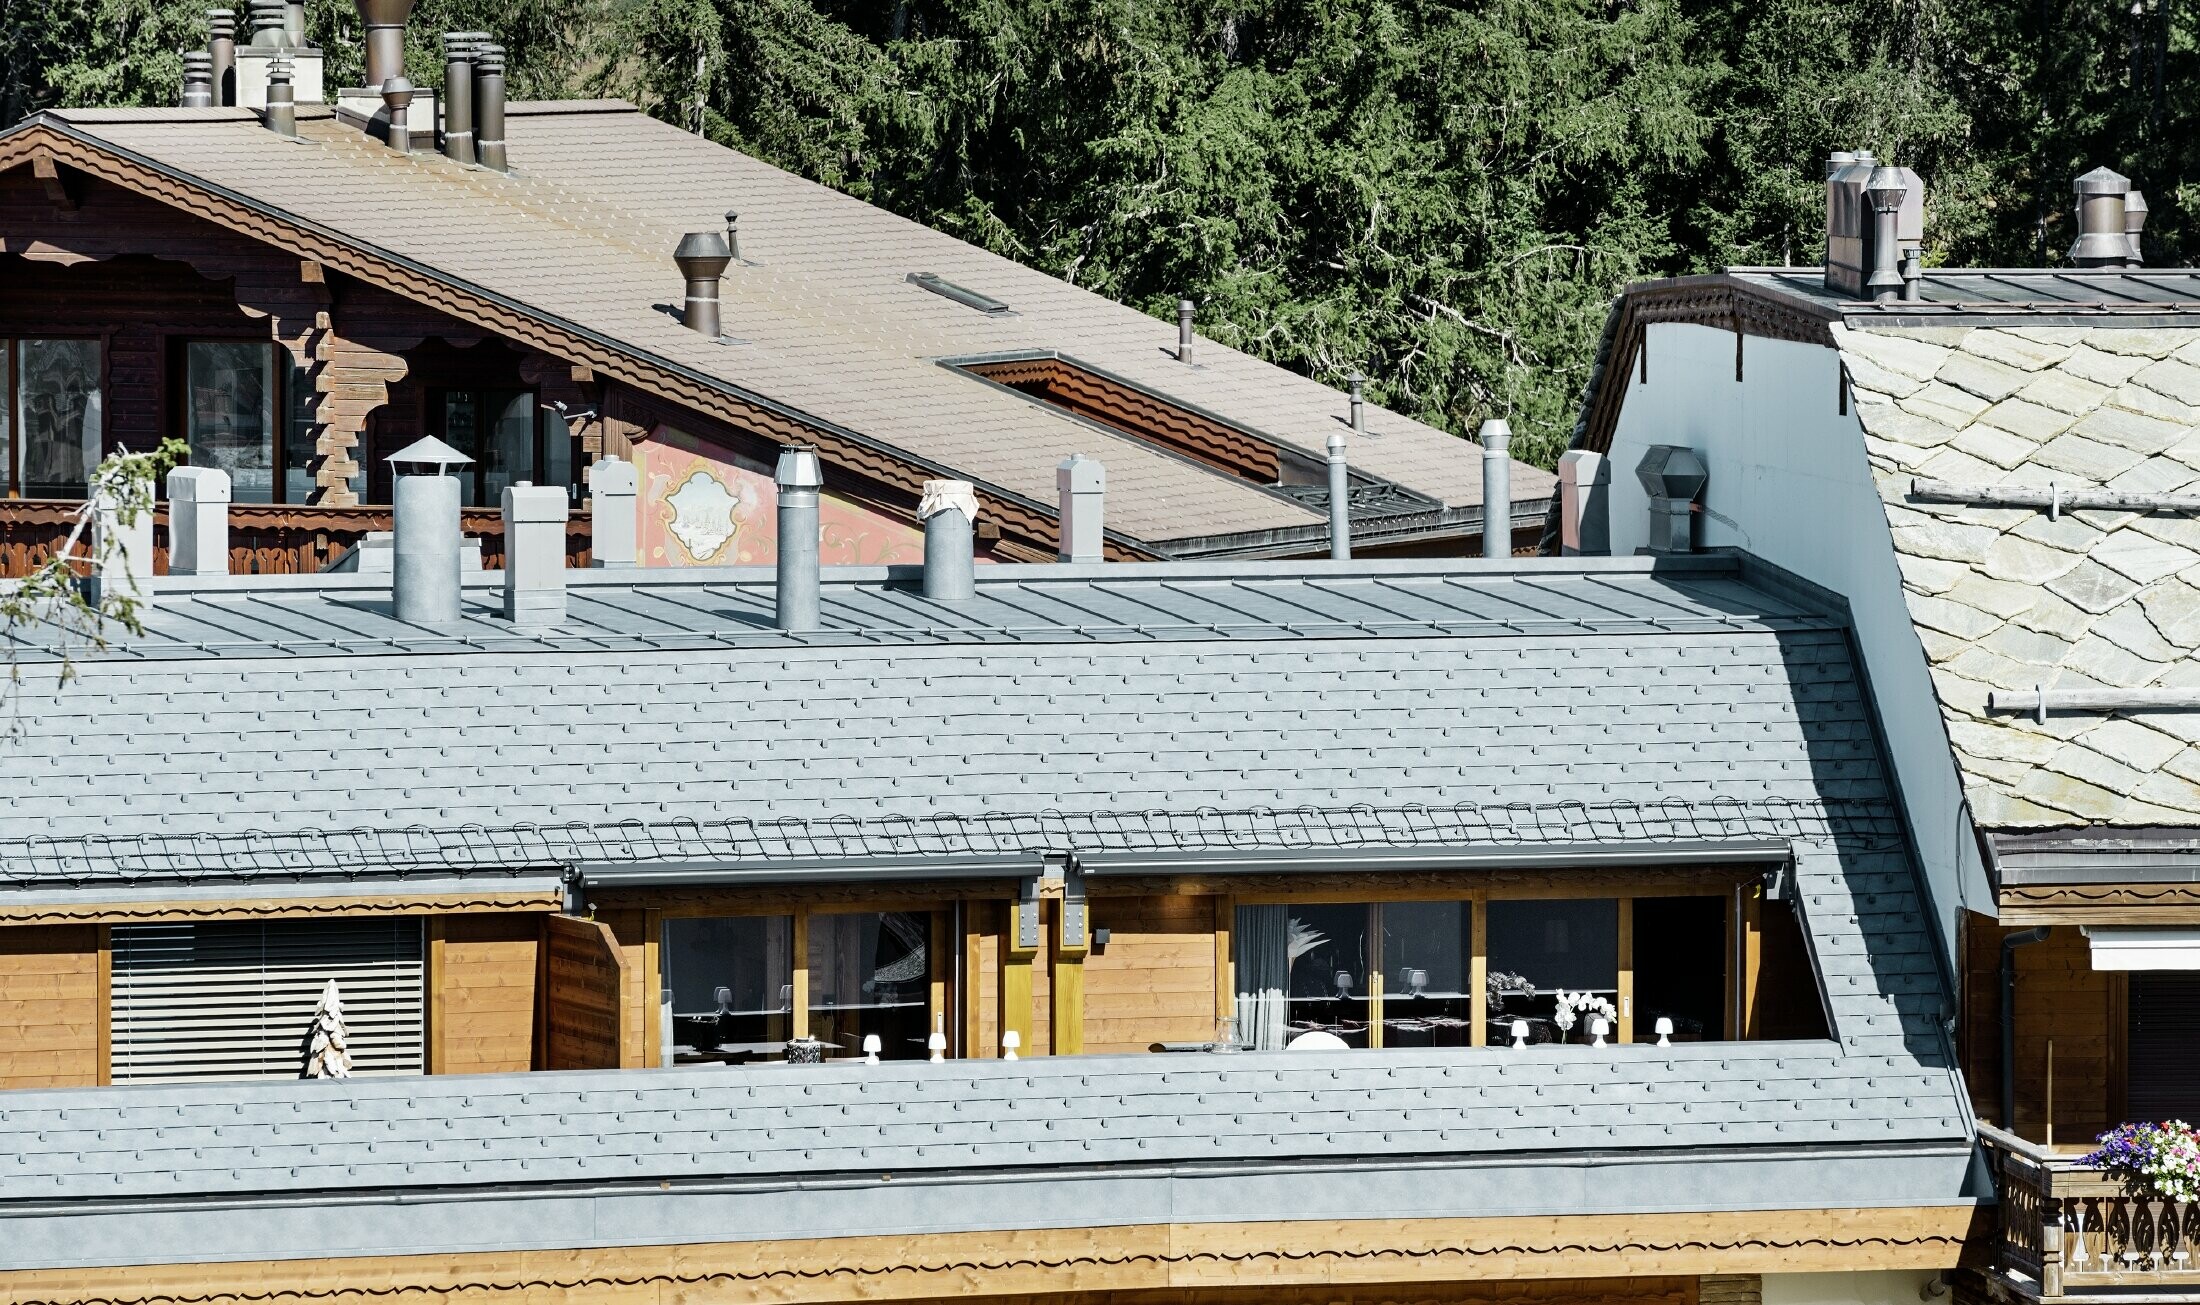 Társasház Crans-Montana településen, hegyekkel a háttérben, játékos fa homlokzattal és márványszürke PREFA alumínium tetőfedő zsindely fedéssel